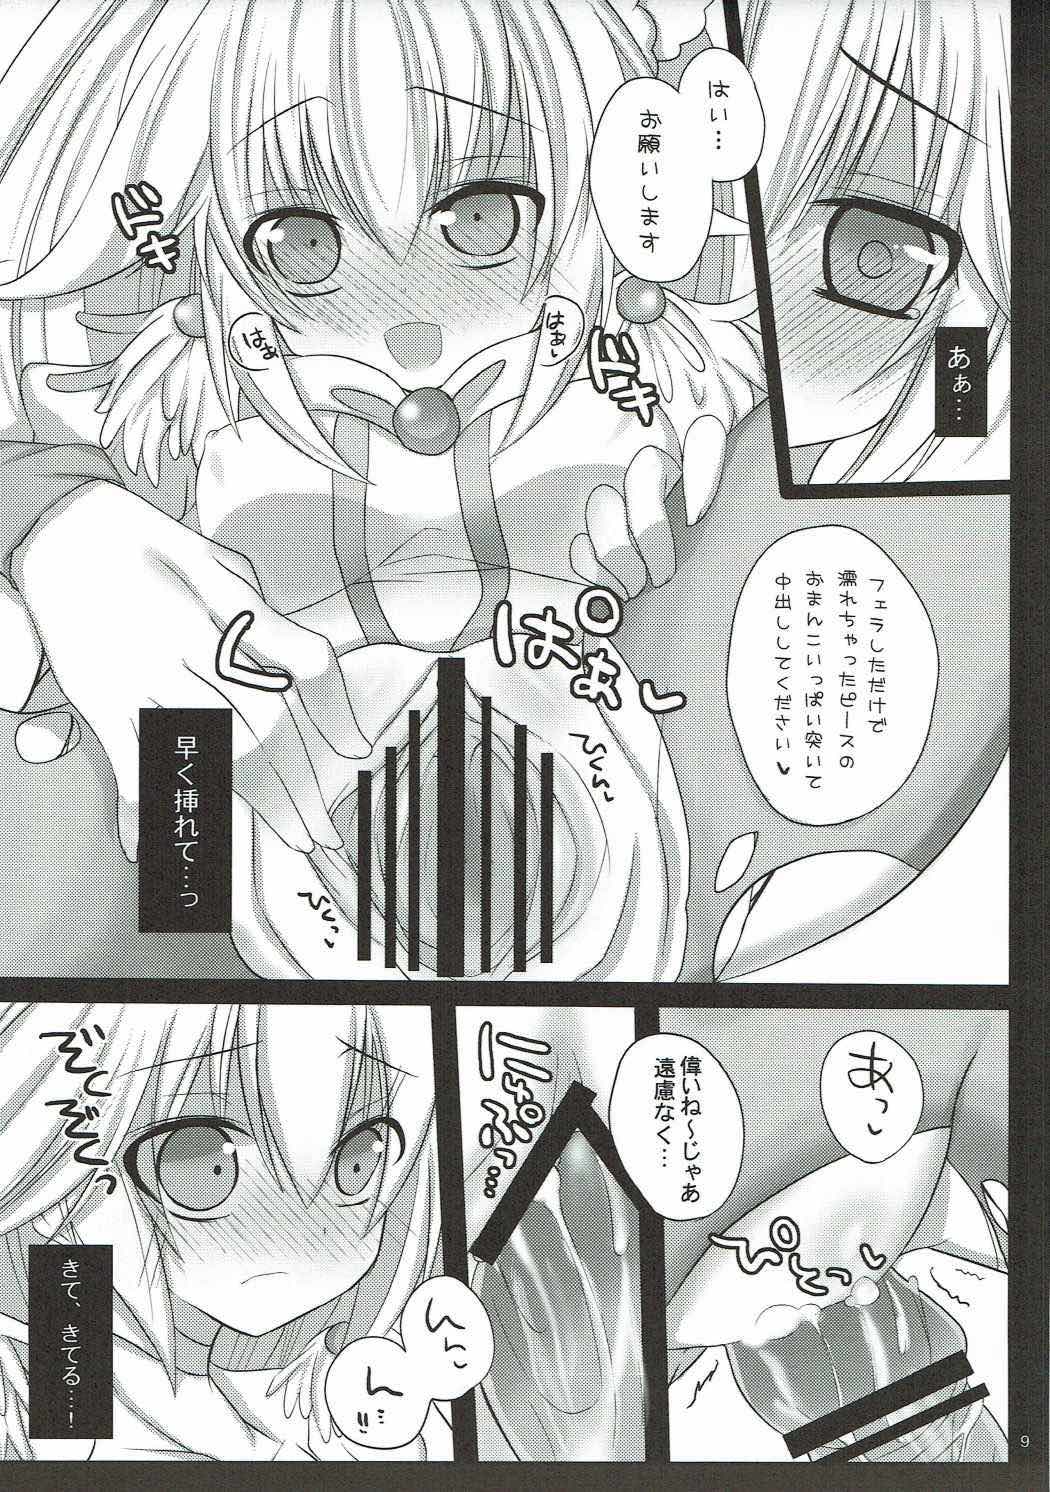 (ComiComi16) [Pictokun (Maruta Itsuki)] Pikapika Thunder (Smile Precure!) page 8 full